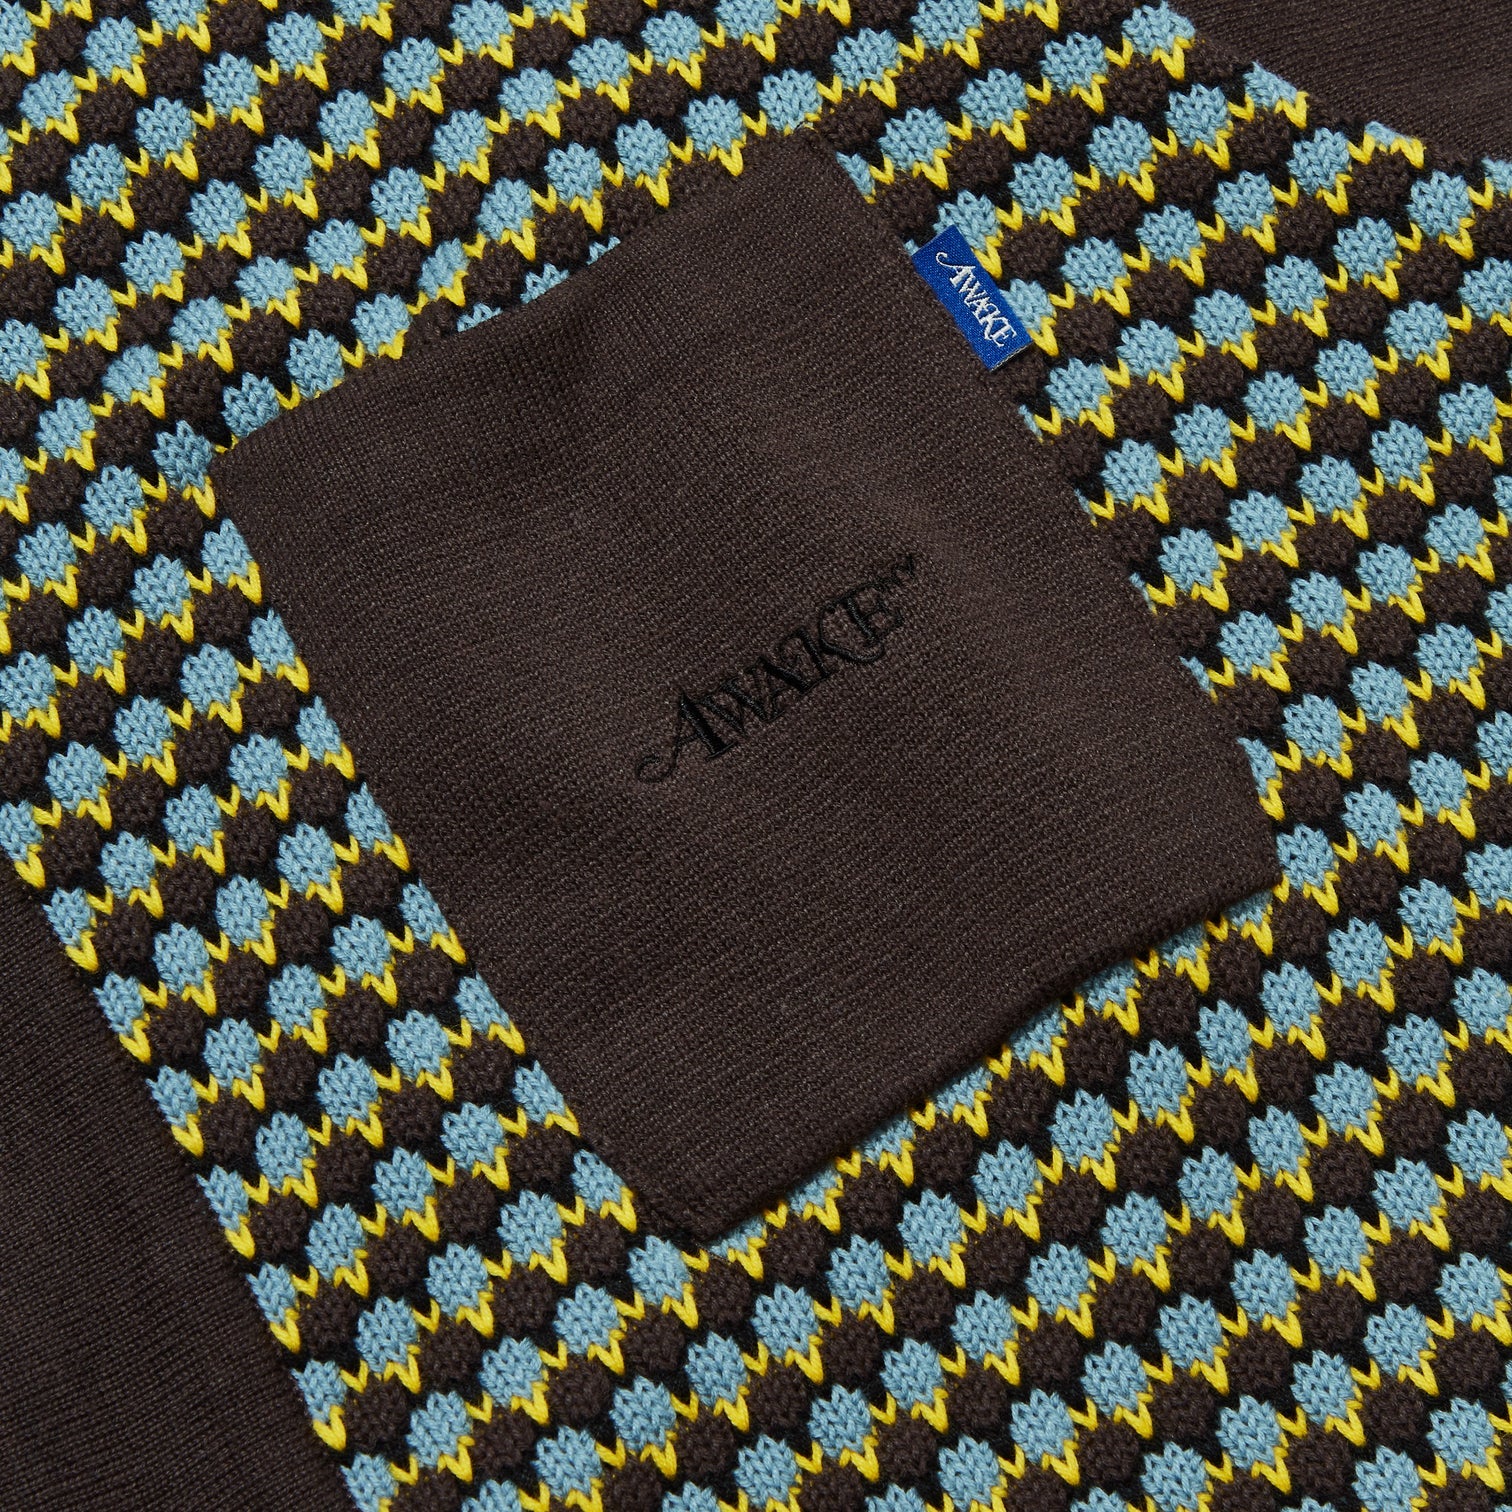 Awake Knit Crochet Short Sleeve Button Down Shirt 'Brown'